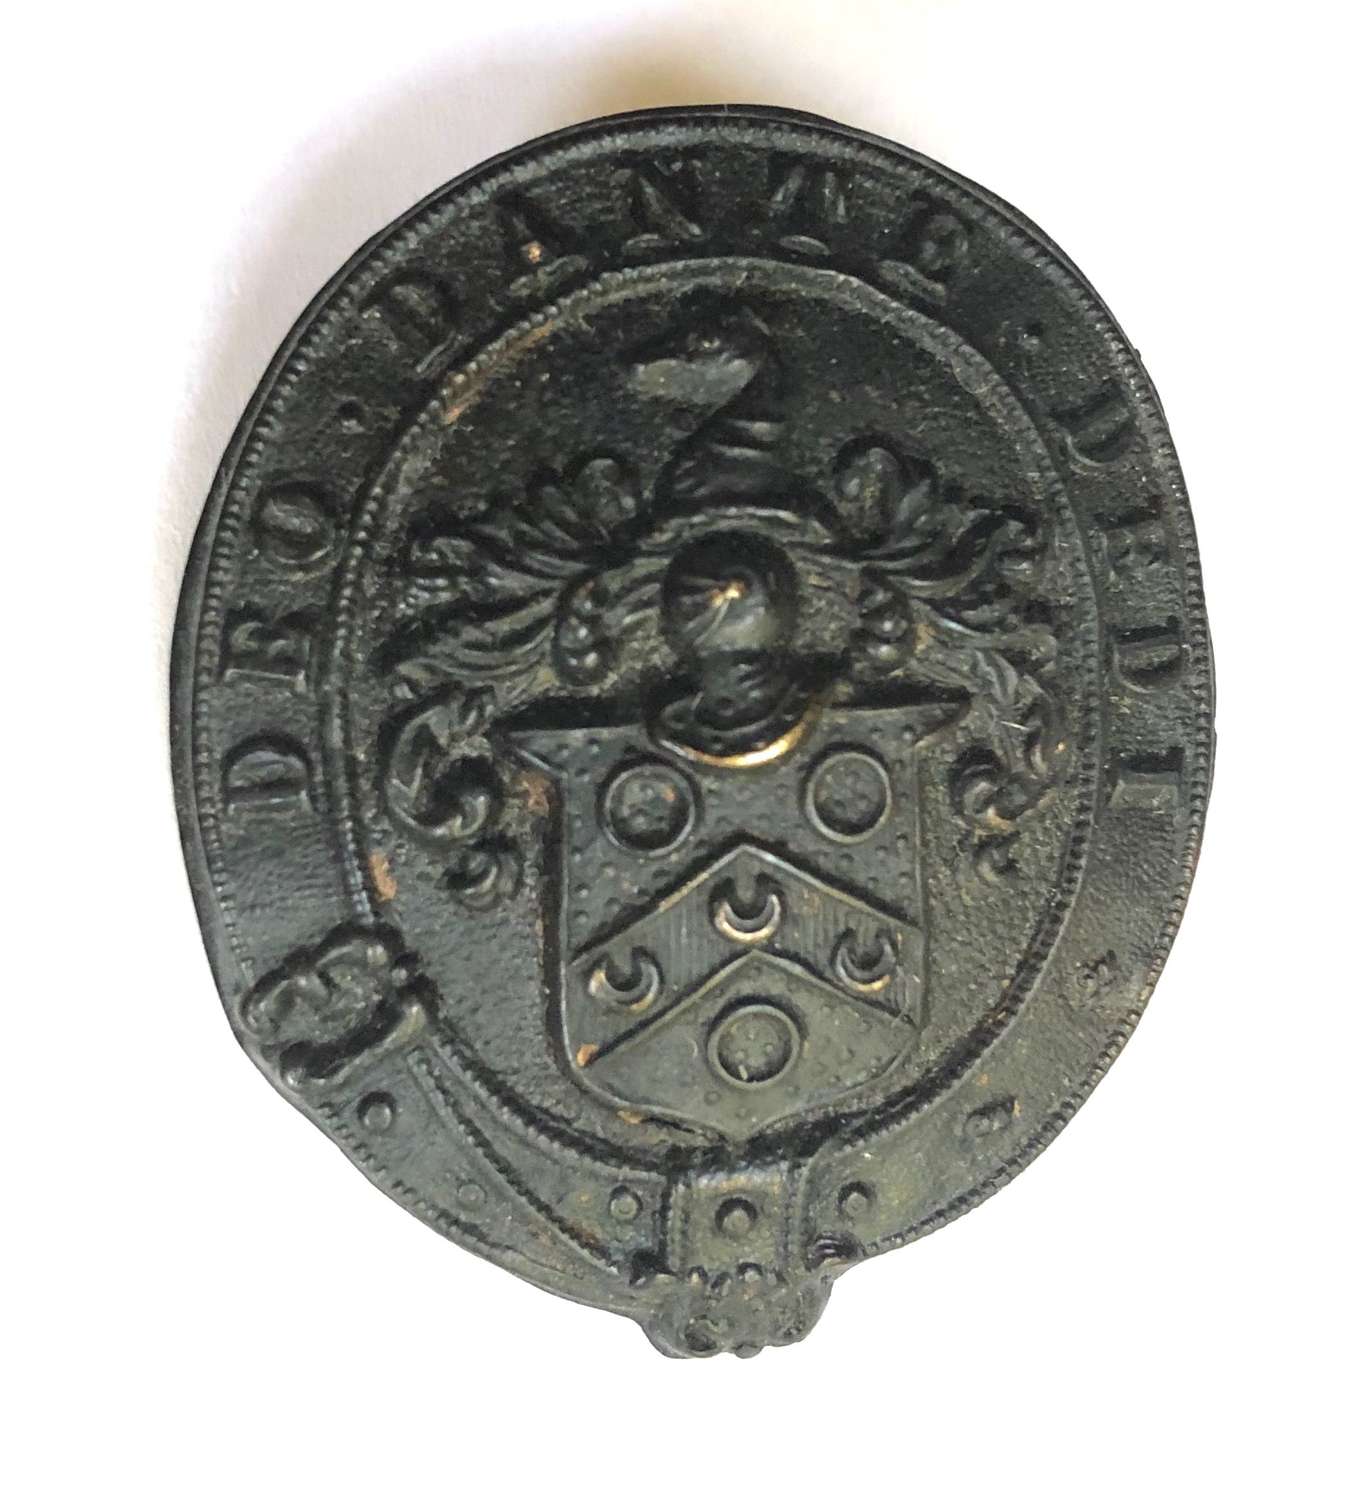 Charterhouse School Cadet Corps Victorian glengarry / cap badge